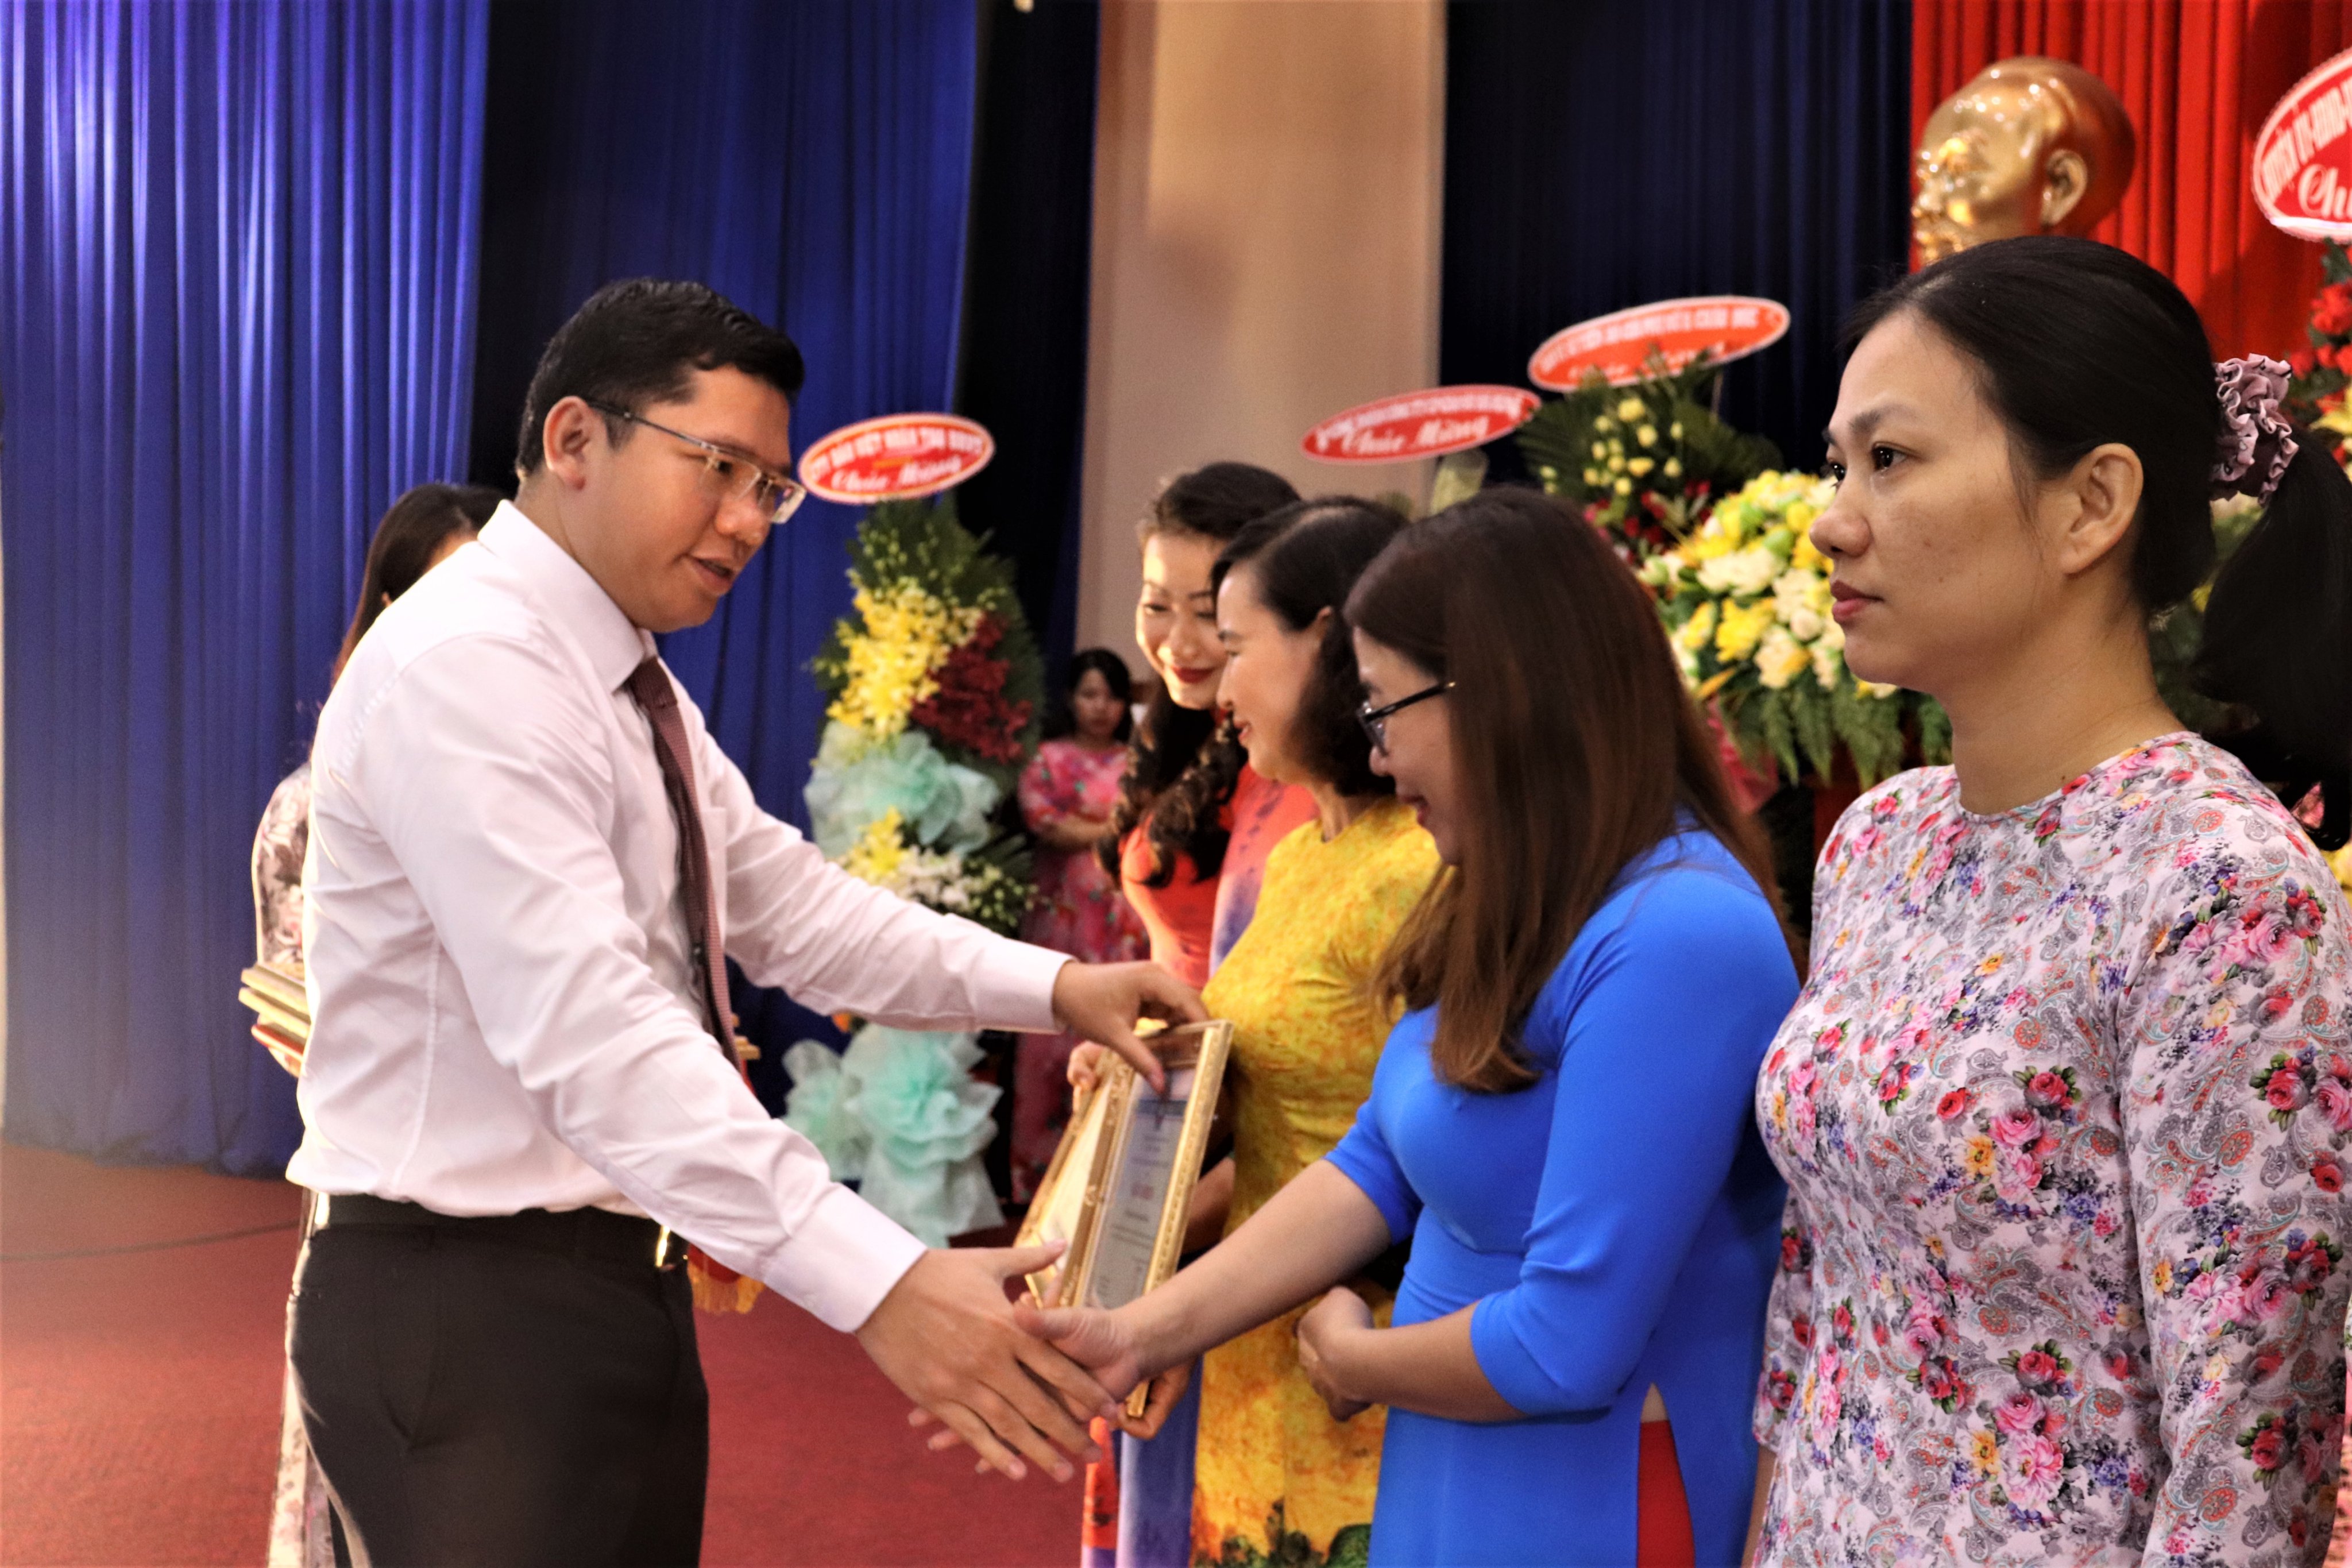 Ông Hoàng Nguyên Dinh, Chủ tịch UBND huyện Châu Đức khen thưởng các tập thể phụ nữ tiêu biểu trong các phong trào thi đua năm 2020.